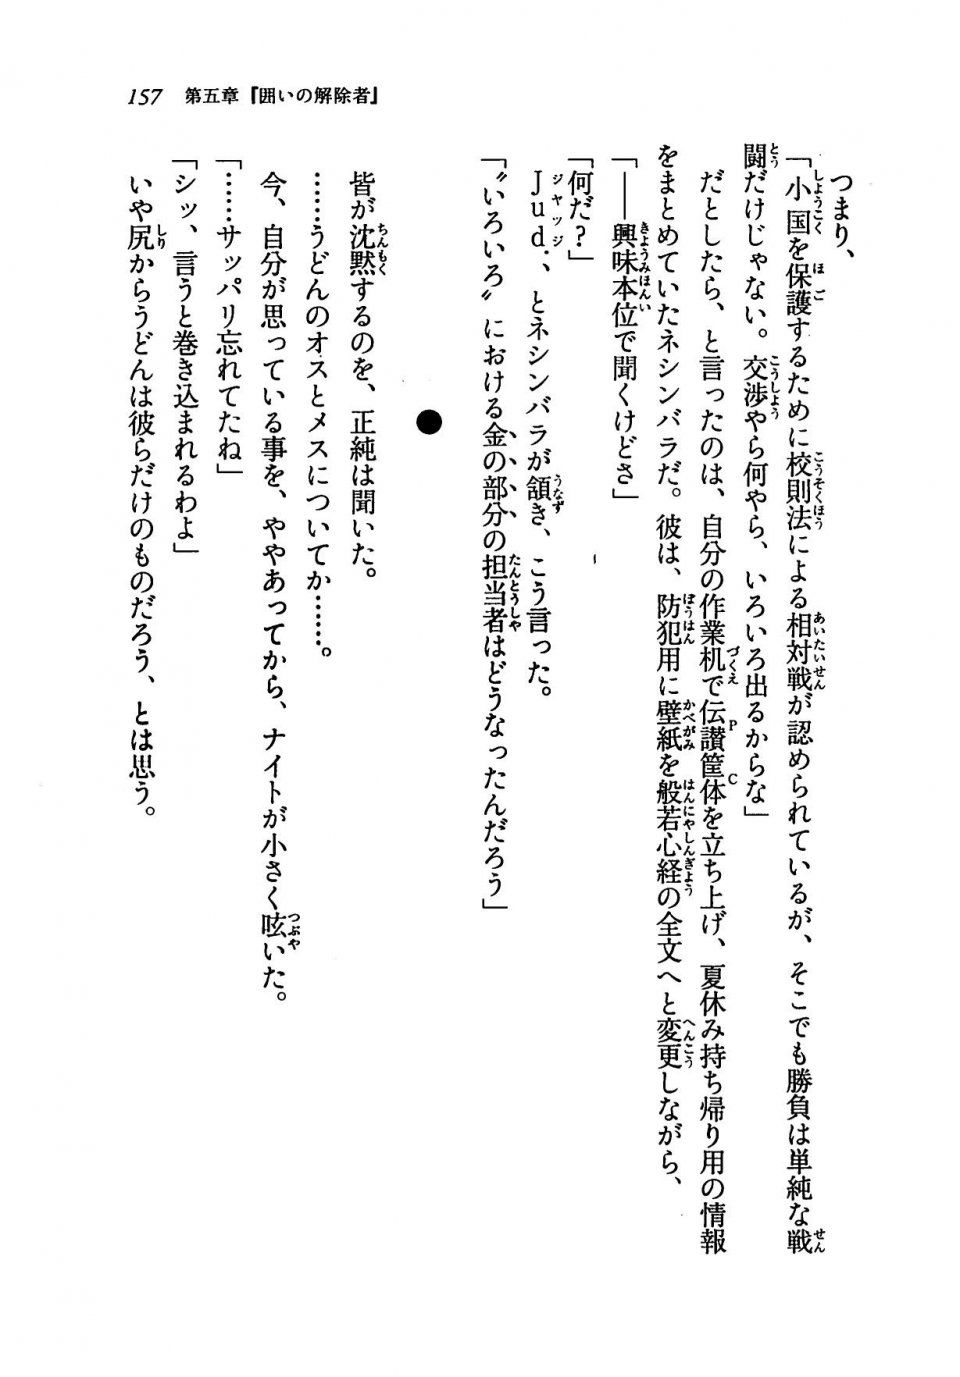 Kyoukai Senjou no Horizon LN Vol 19(8A) - Photo #157